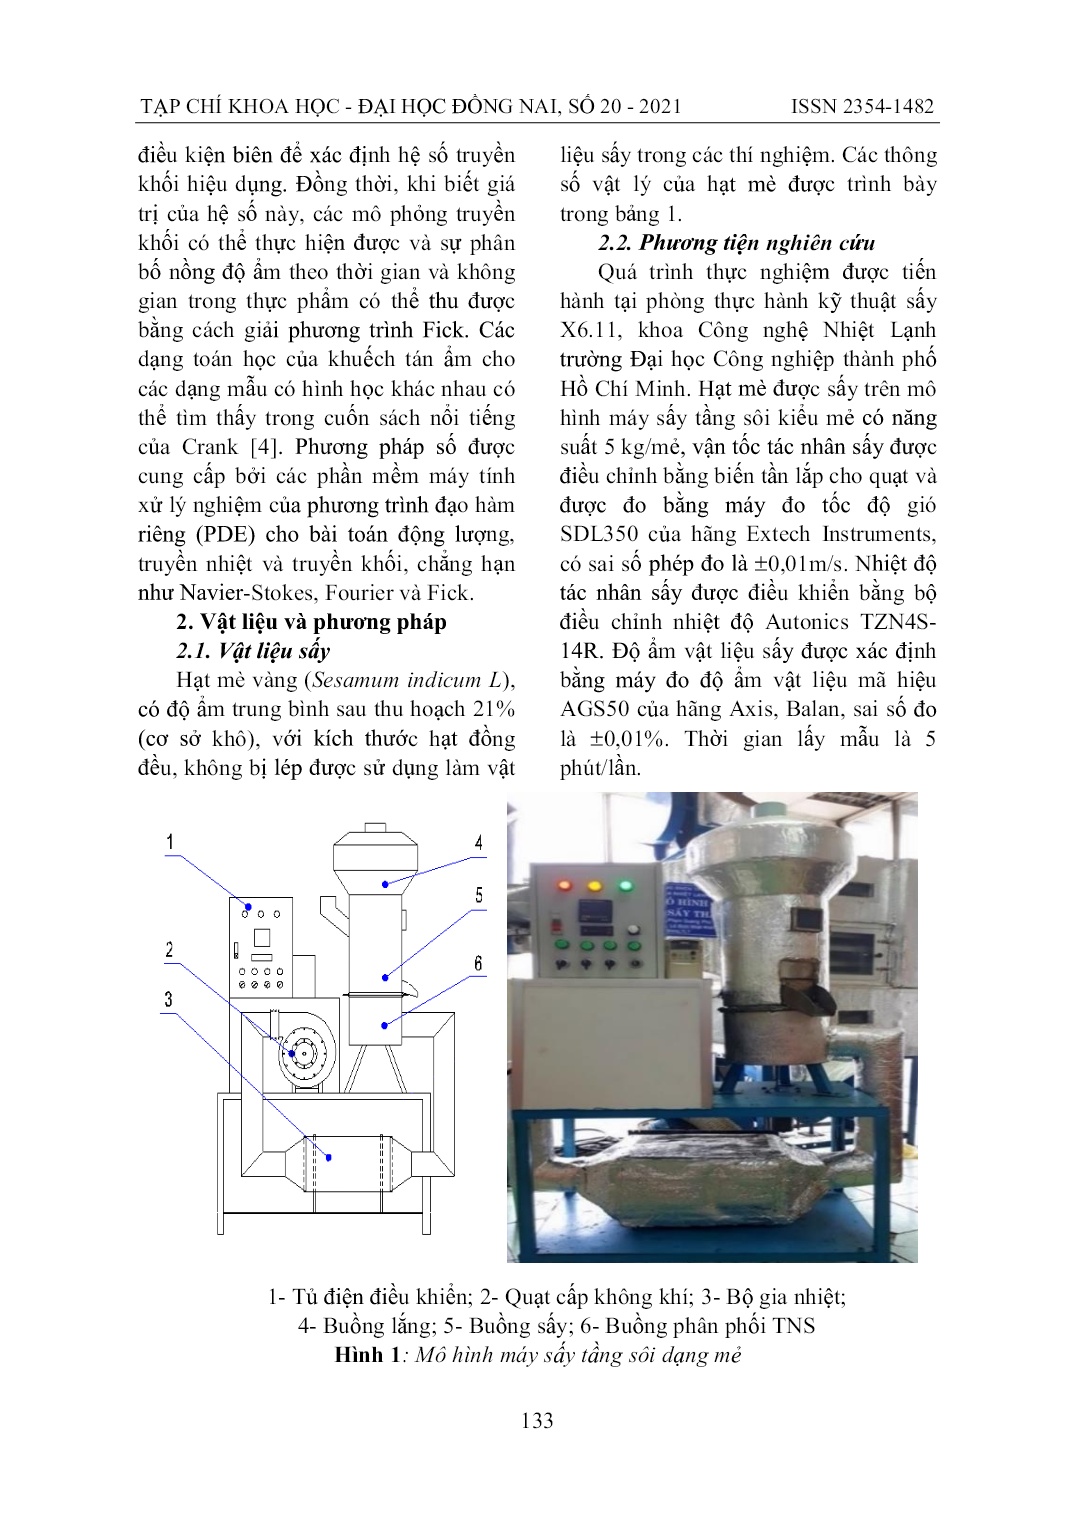 Động học quá trình sấy hạt mè (Sesamum Indicum L) trong máy sấy tầng sôi trang 2